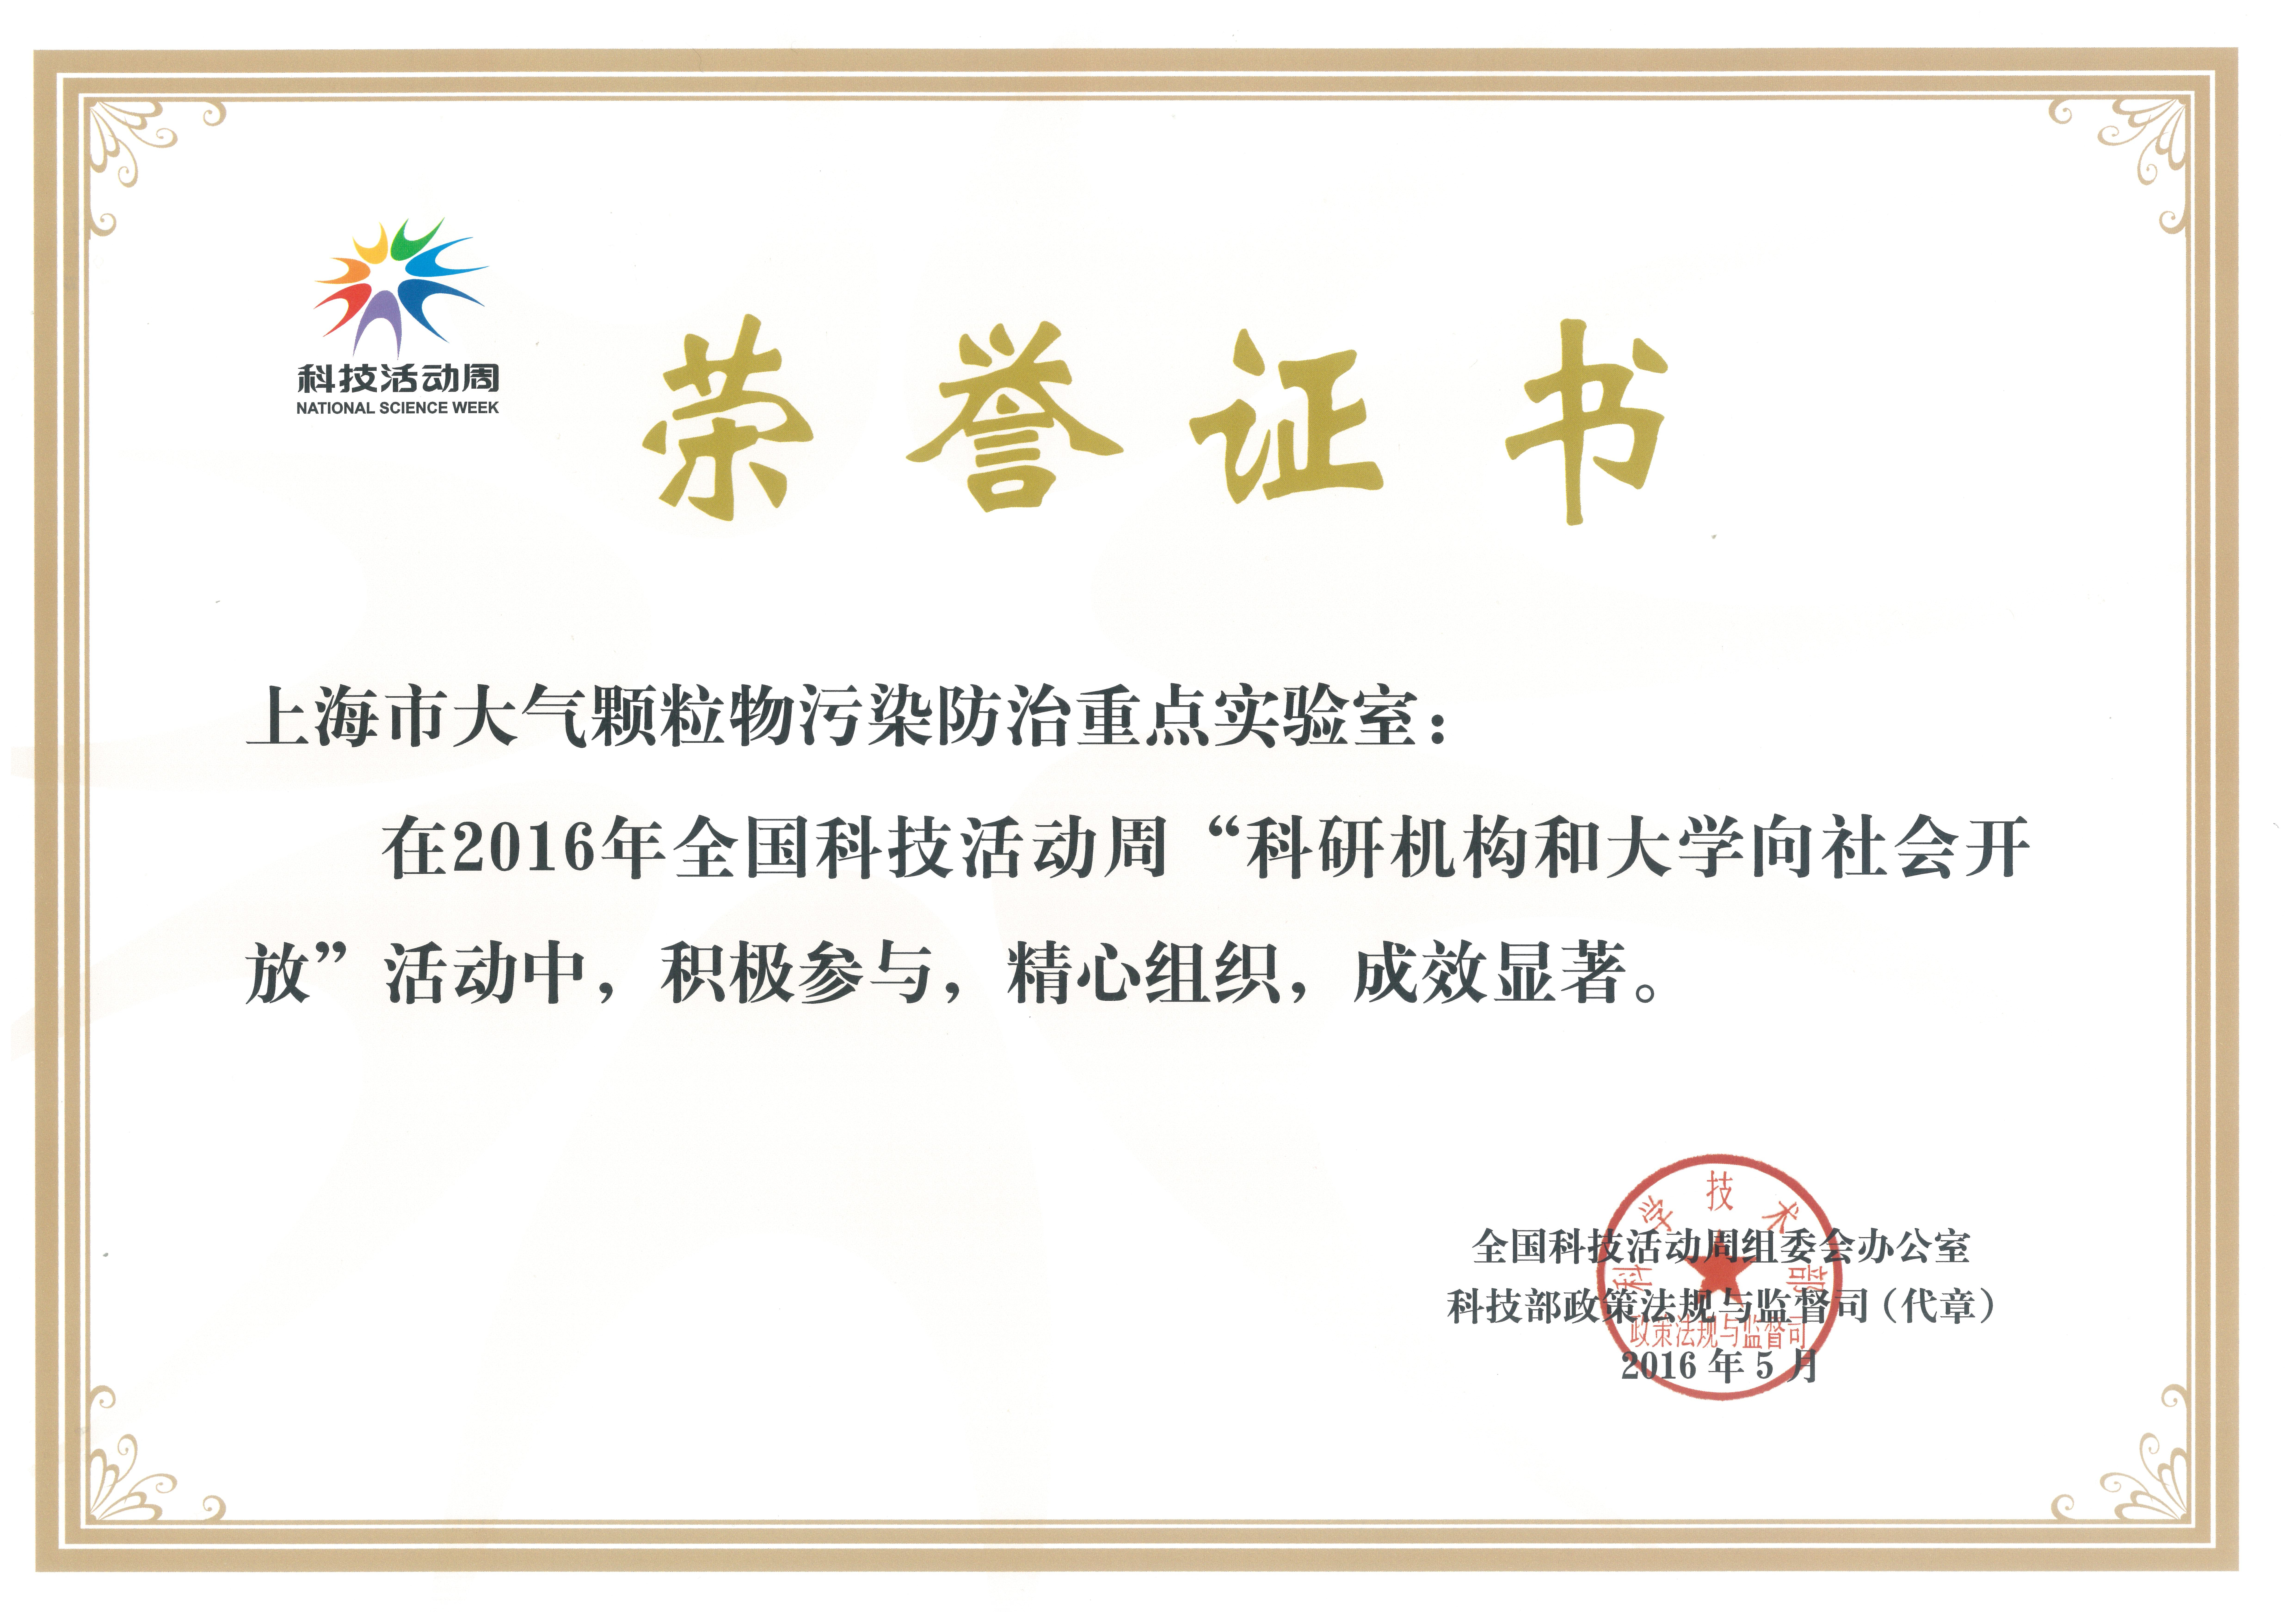 上海市大气颗粒物污染防治重点实验室获得科技部“全国科技活动周活动”表彰